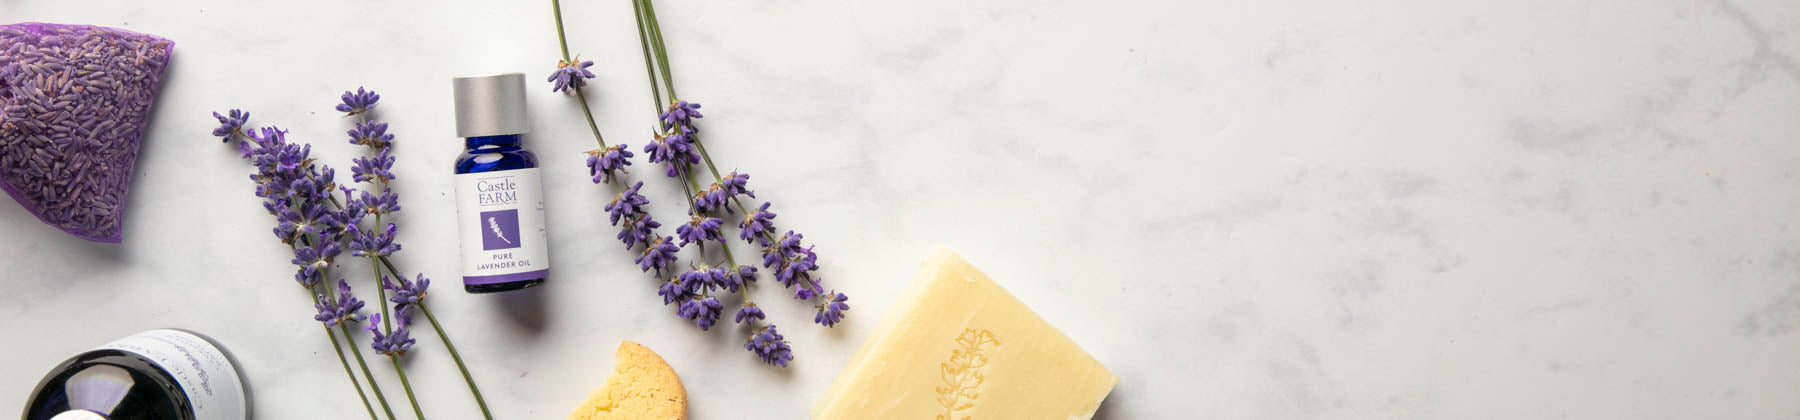 Bath, Body & Essential Lavender Oils